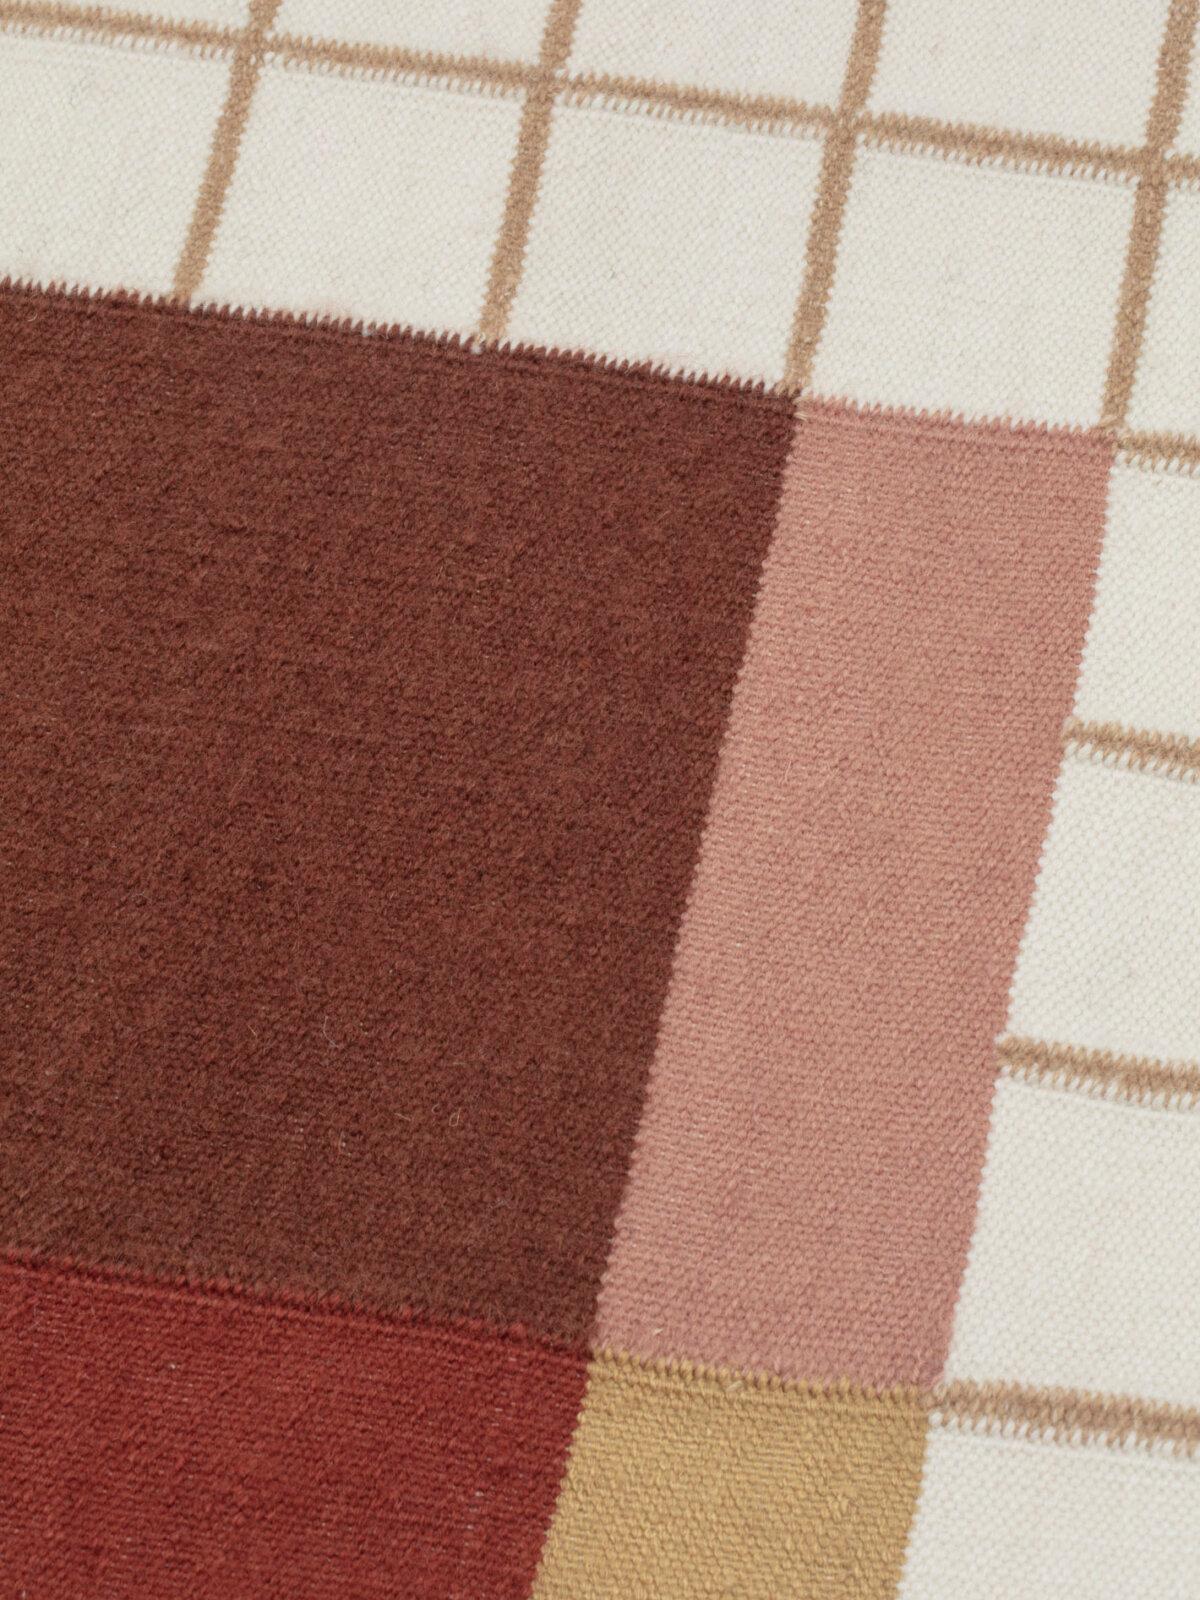 Raag ist ein Teppich, der vom Doshi Levien Studio für die Marke CC-Tapis entworfen wurde. Raag ist ein Teppich aus der Raag Collection, die aus Teppichen besteht, die ein unverwechselbares, auf Gittern und geometrischen Elementen basierendes Thema